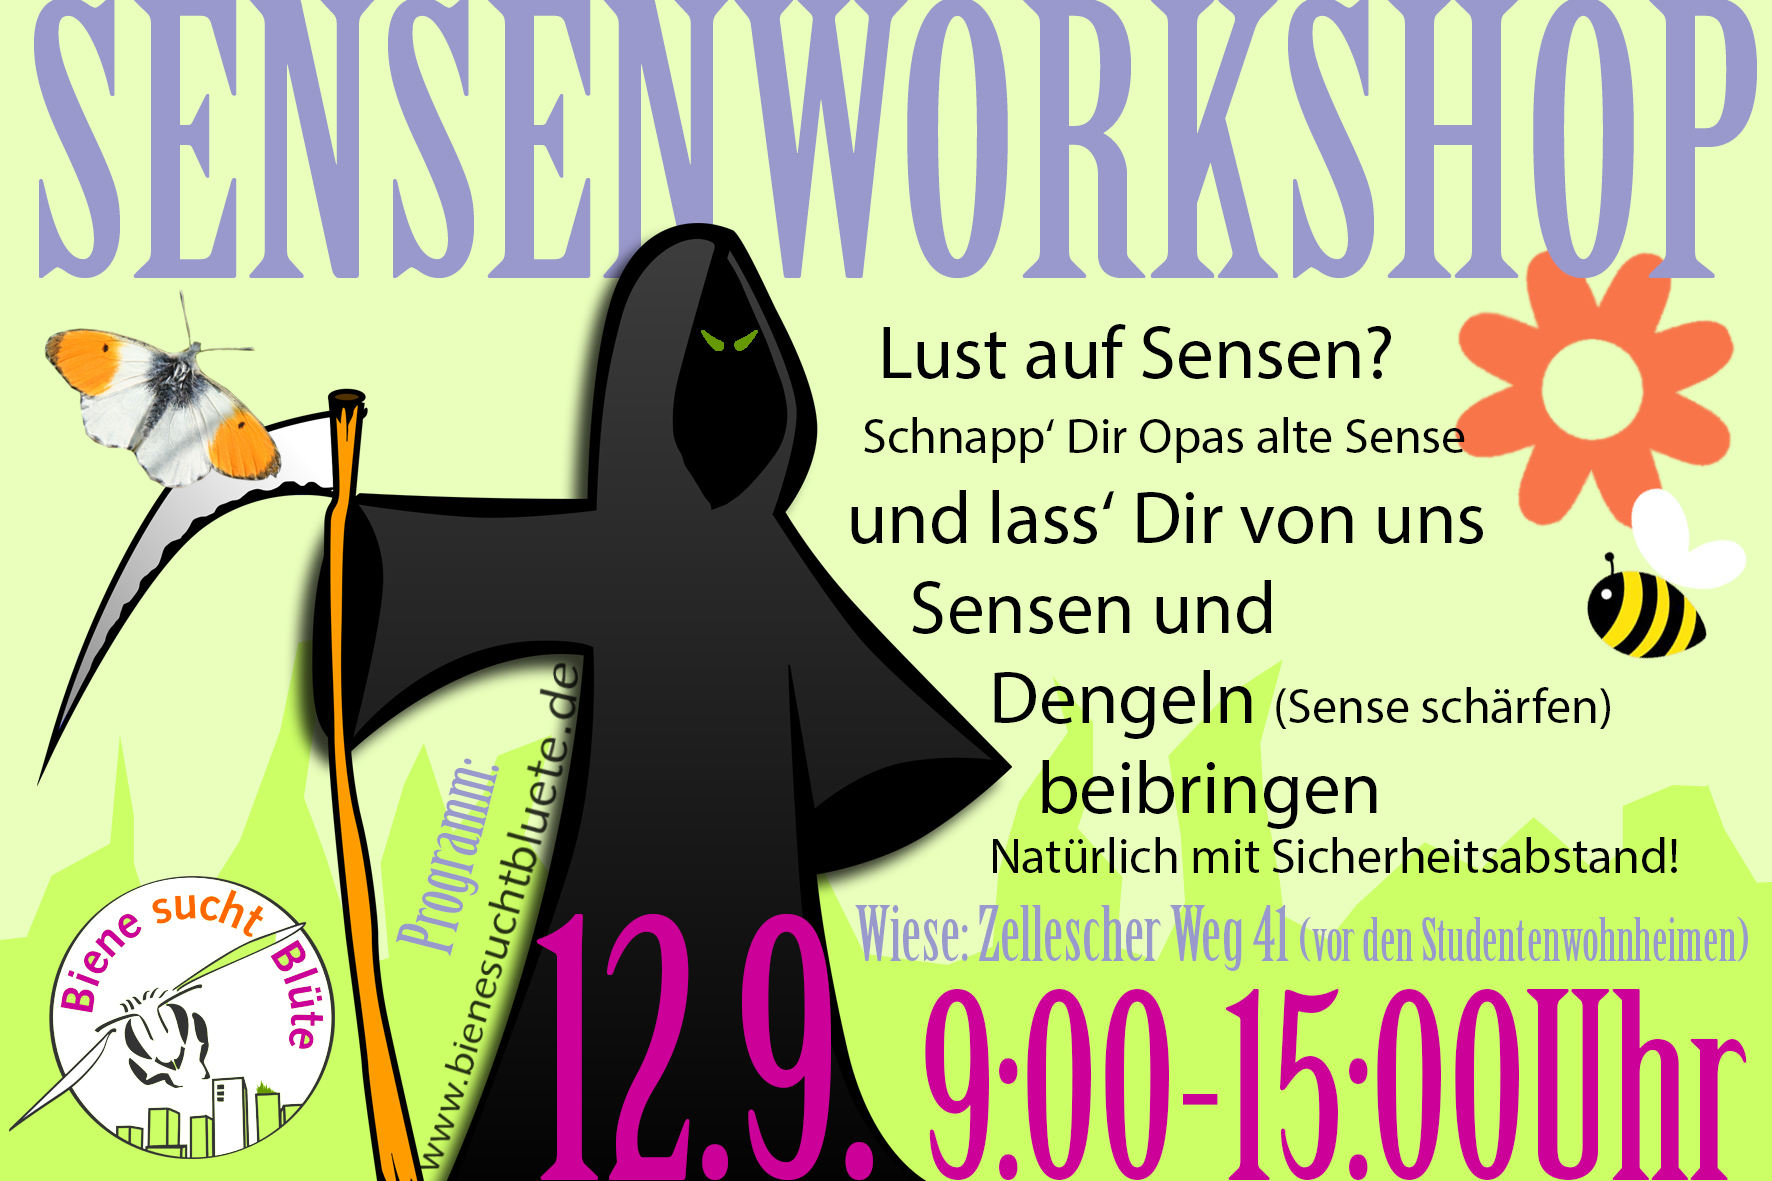 12.09.sensenworkshop